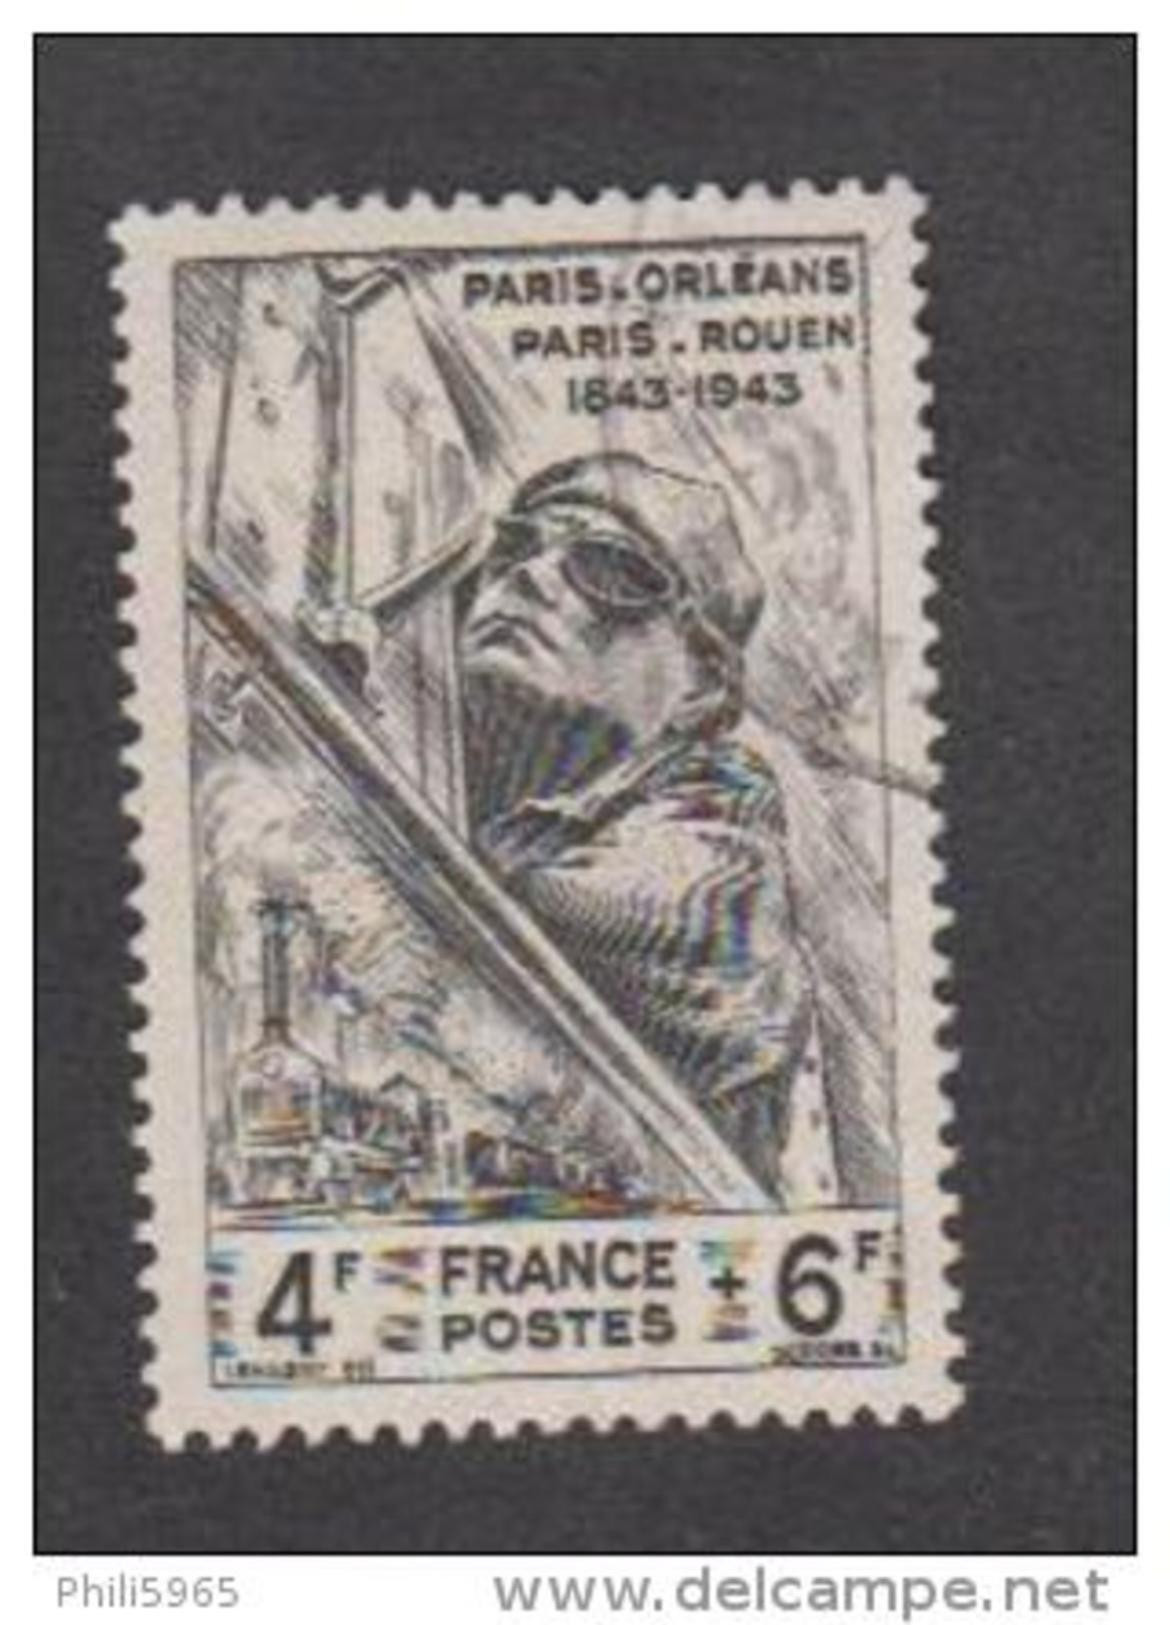 France Oblitérés - N° 618 - Chemin De Fer Paris-Orléans - 1944 -TB - Oblitérés